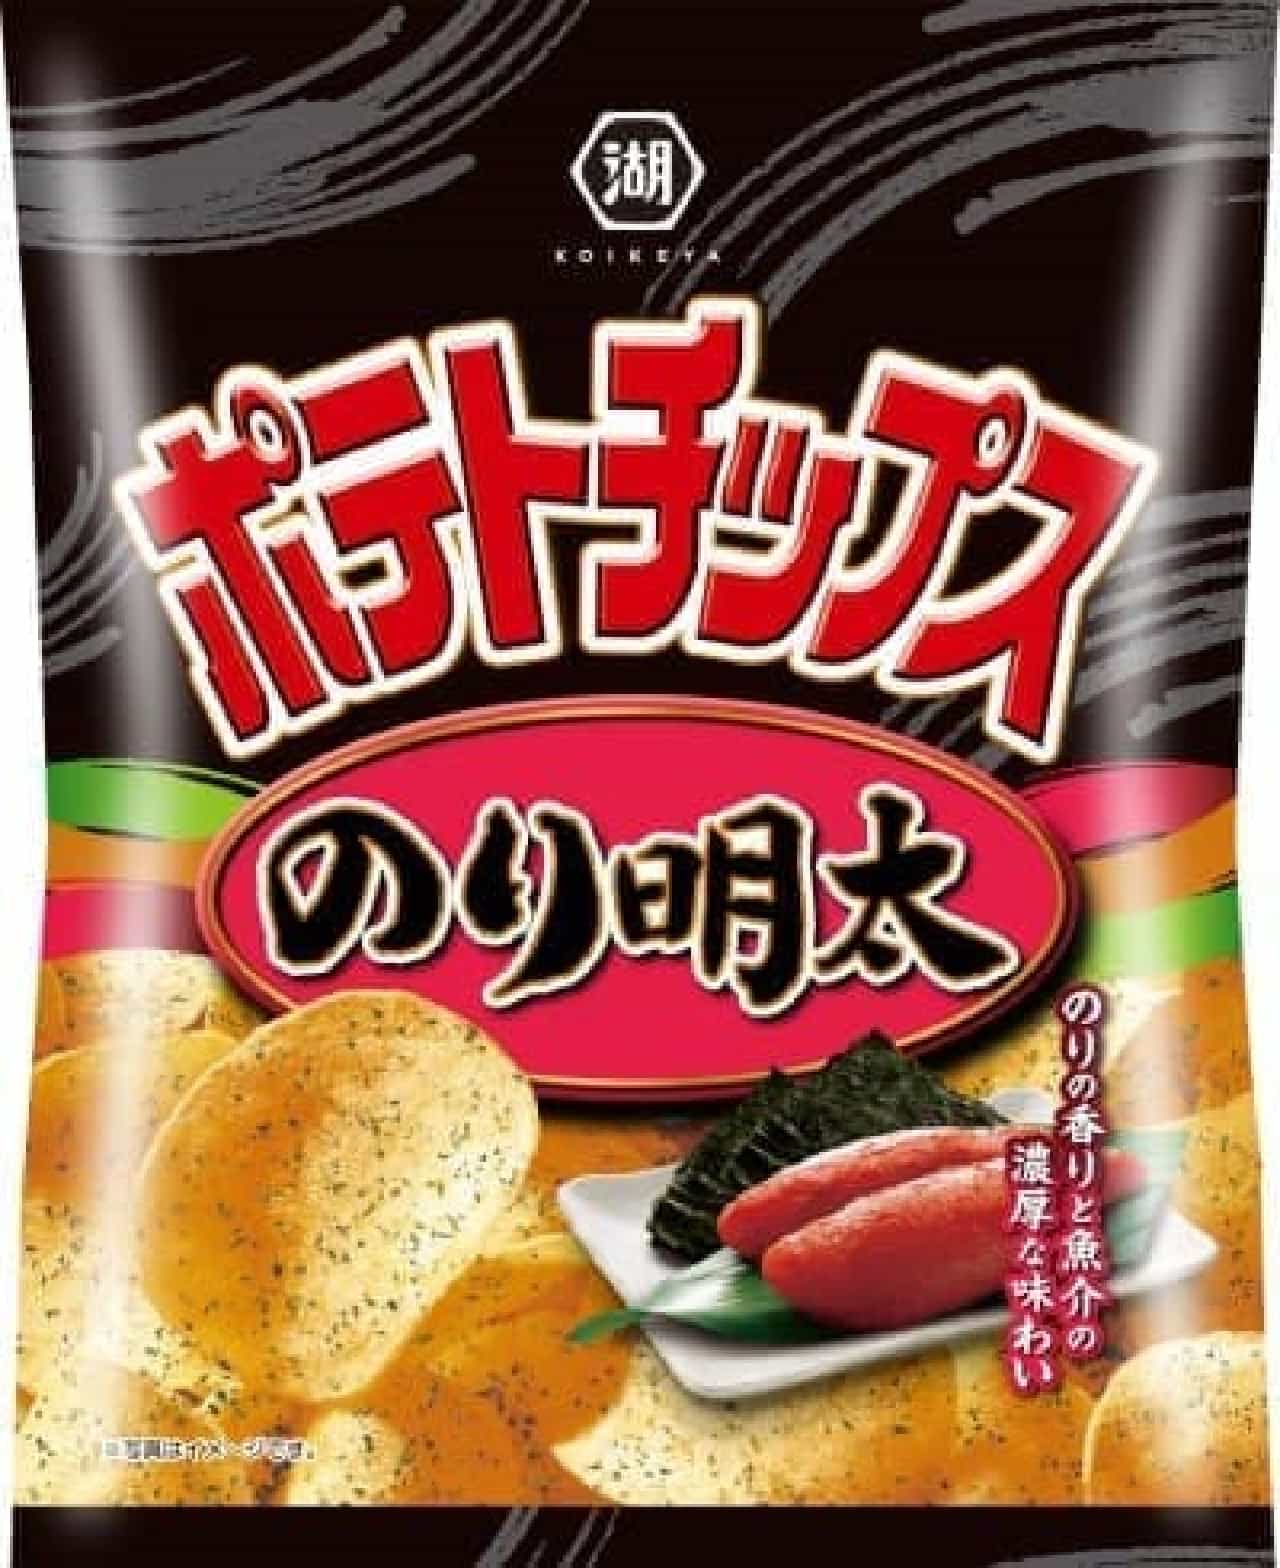 Koike-ya "Potato Chips Nori Meita"